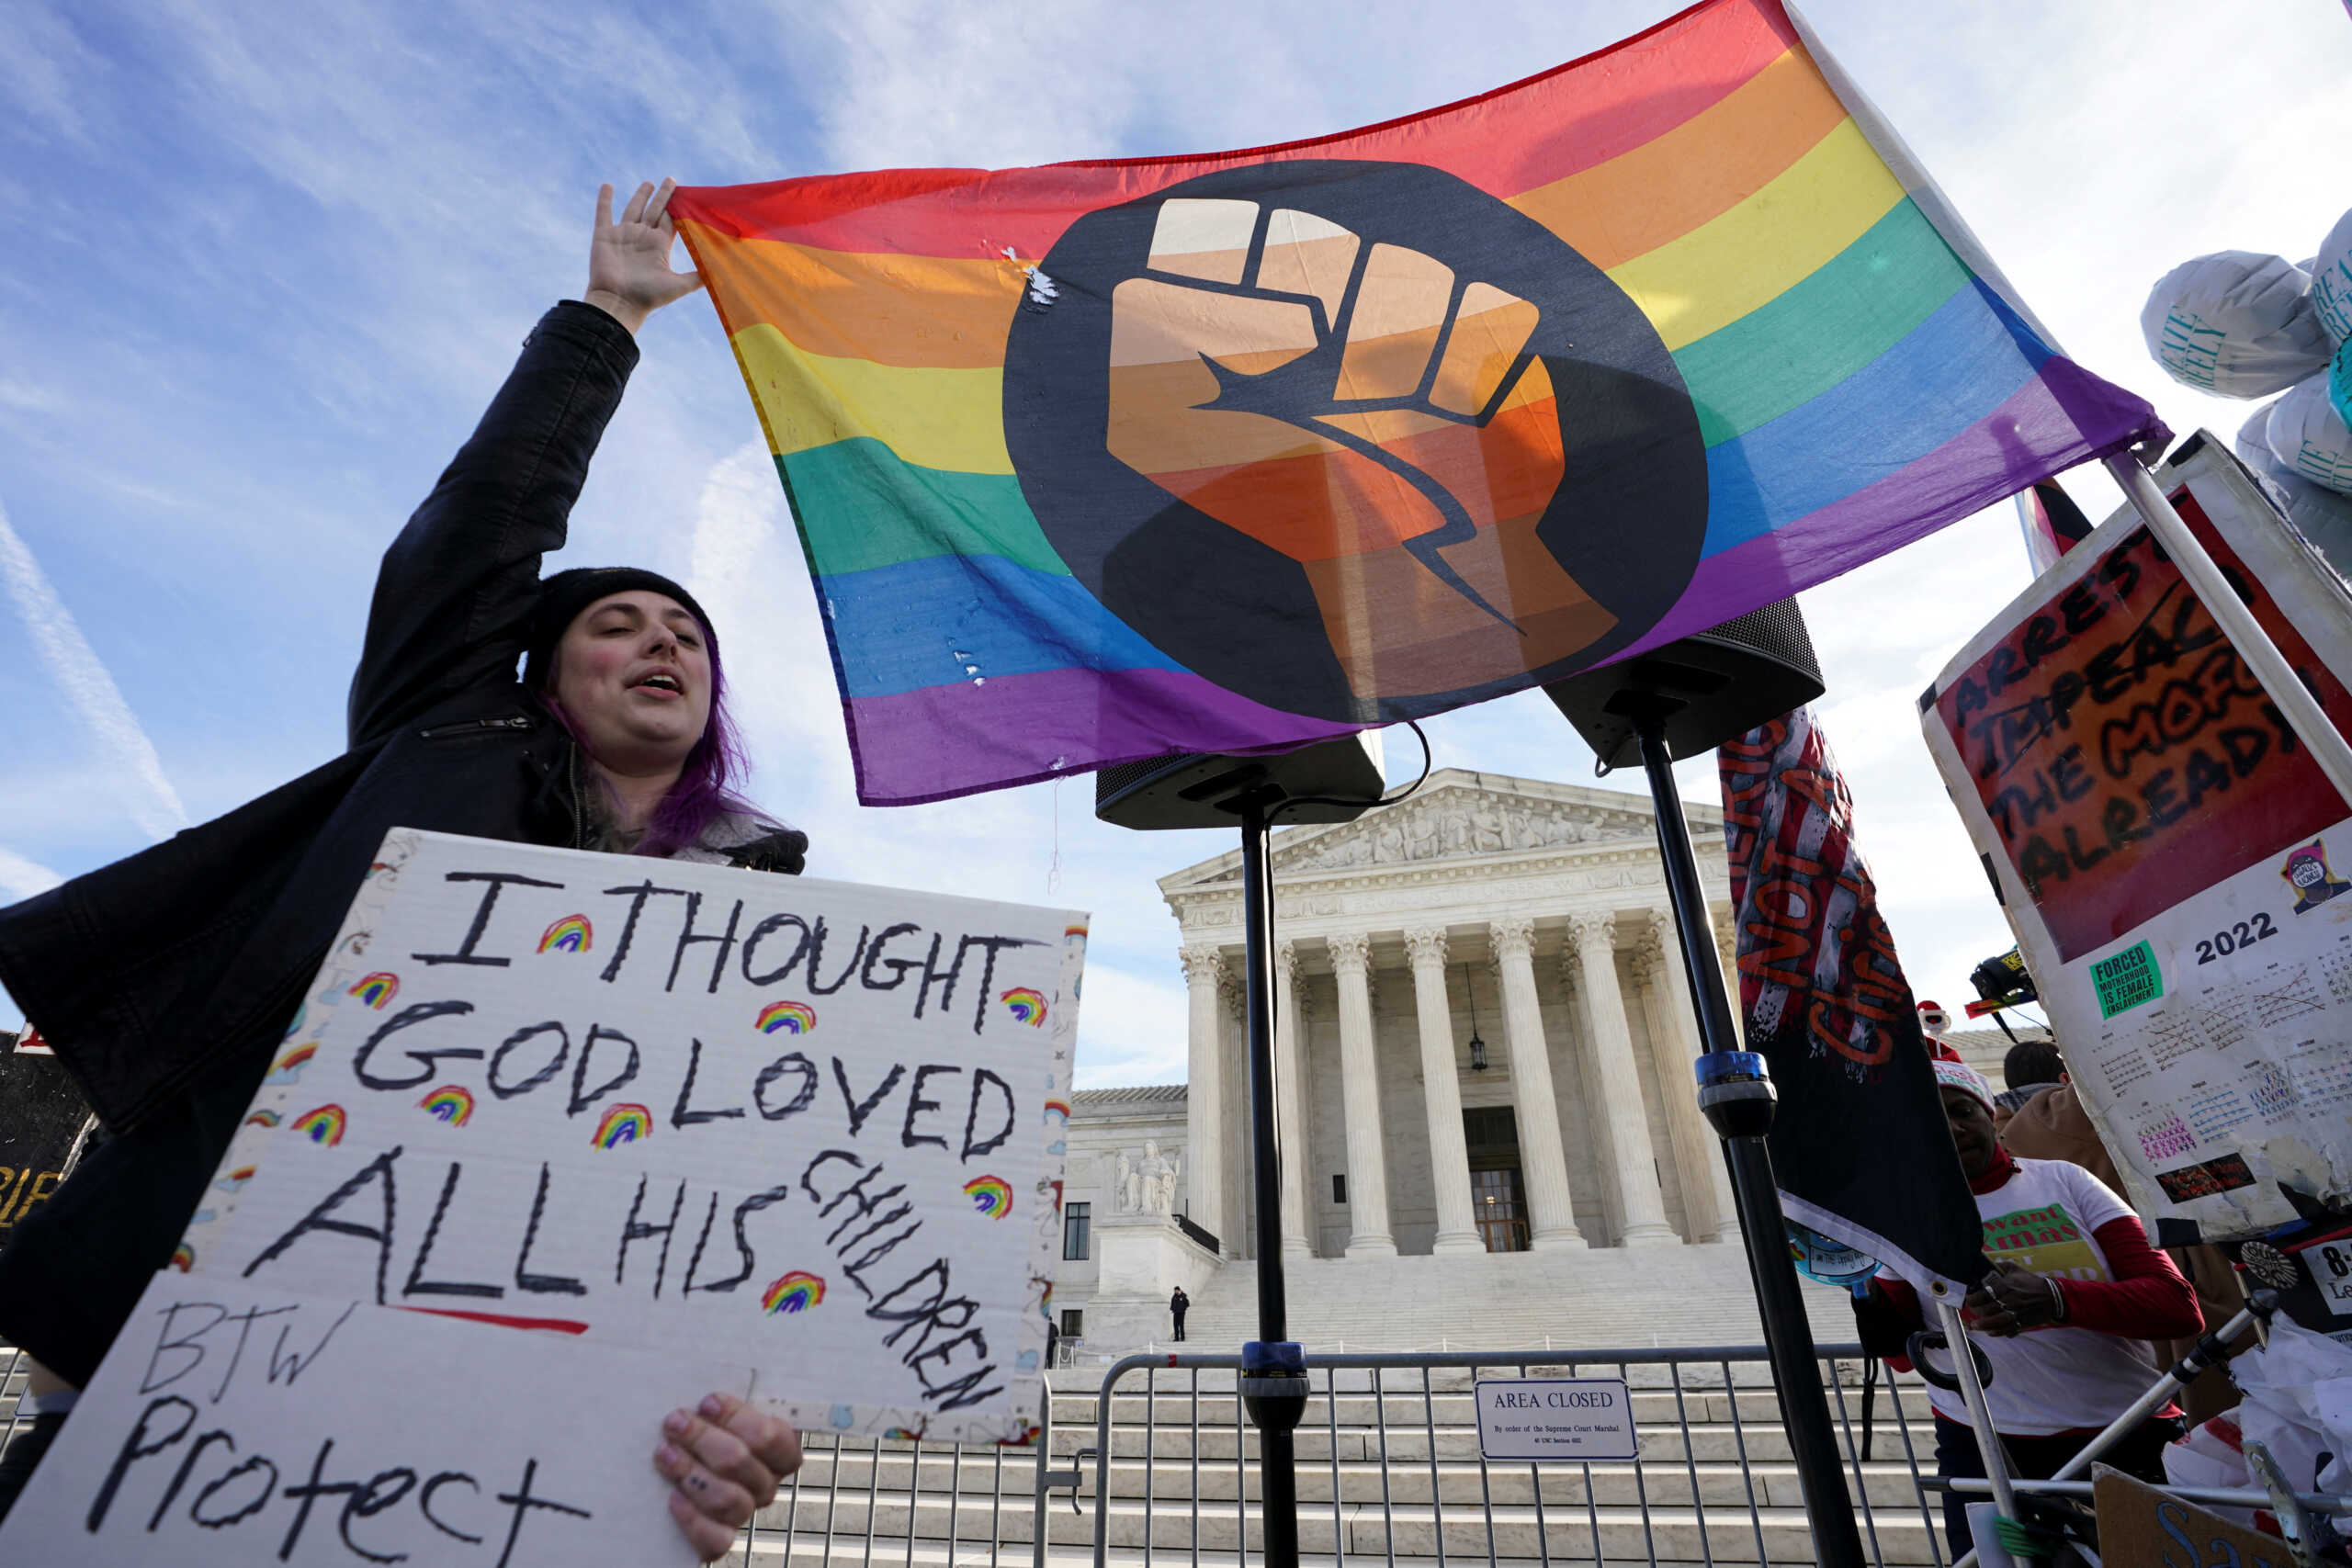 ΗΠΑ: Το Ανώτατο Δικαστήριο οδεύει προς την κατοχύρωση της άρνησης παροχής υπηρεσιών σε… ομοφυλόφιλους